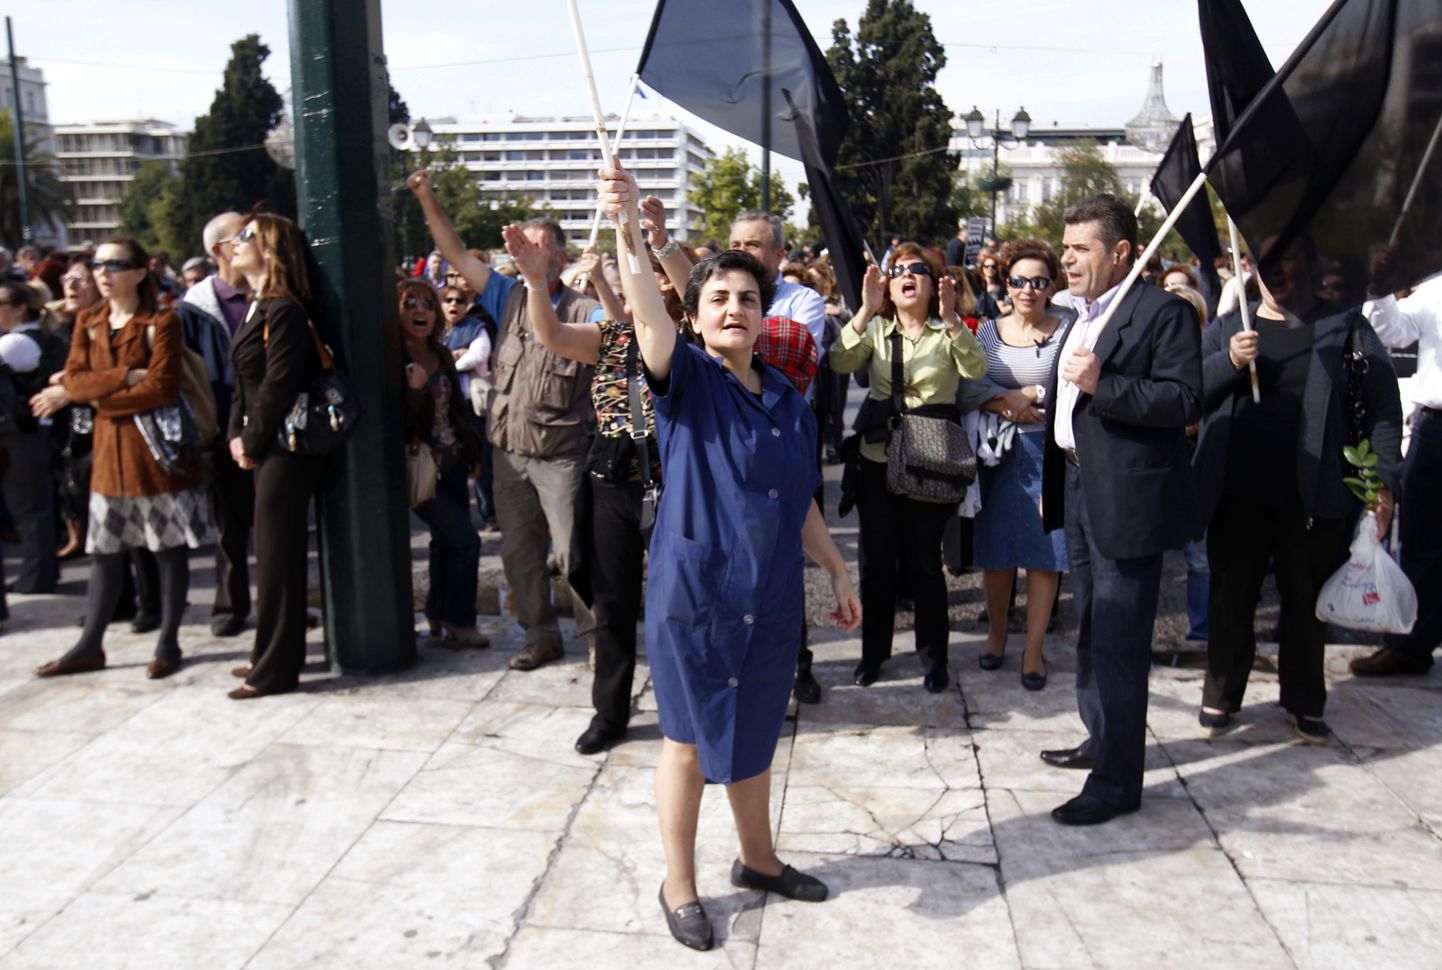 Pildil Kreeka riigiteenistujate meeleavaldus Ateenas parlamendihoone ees.